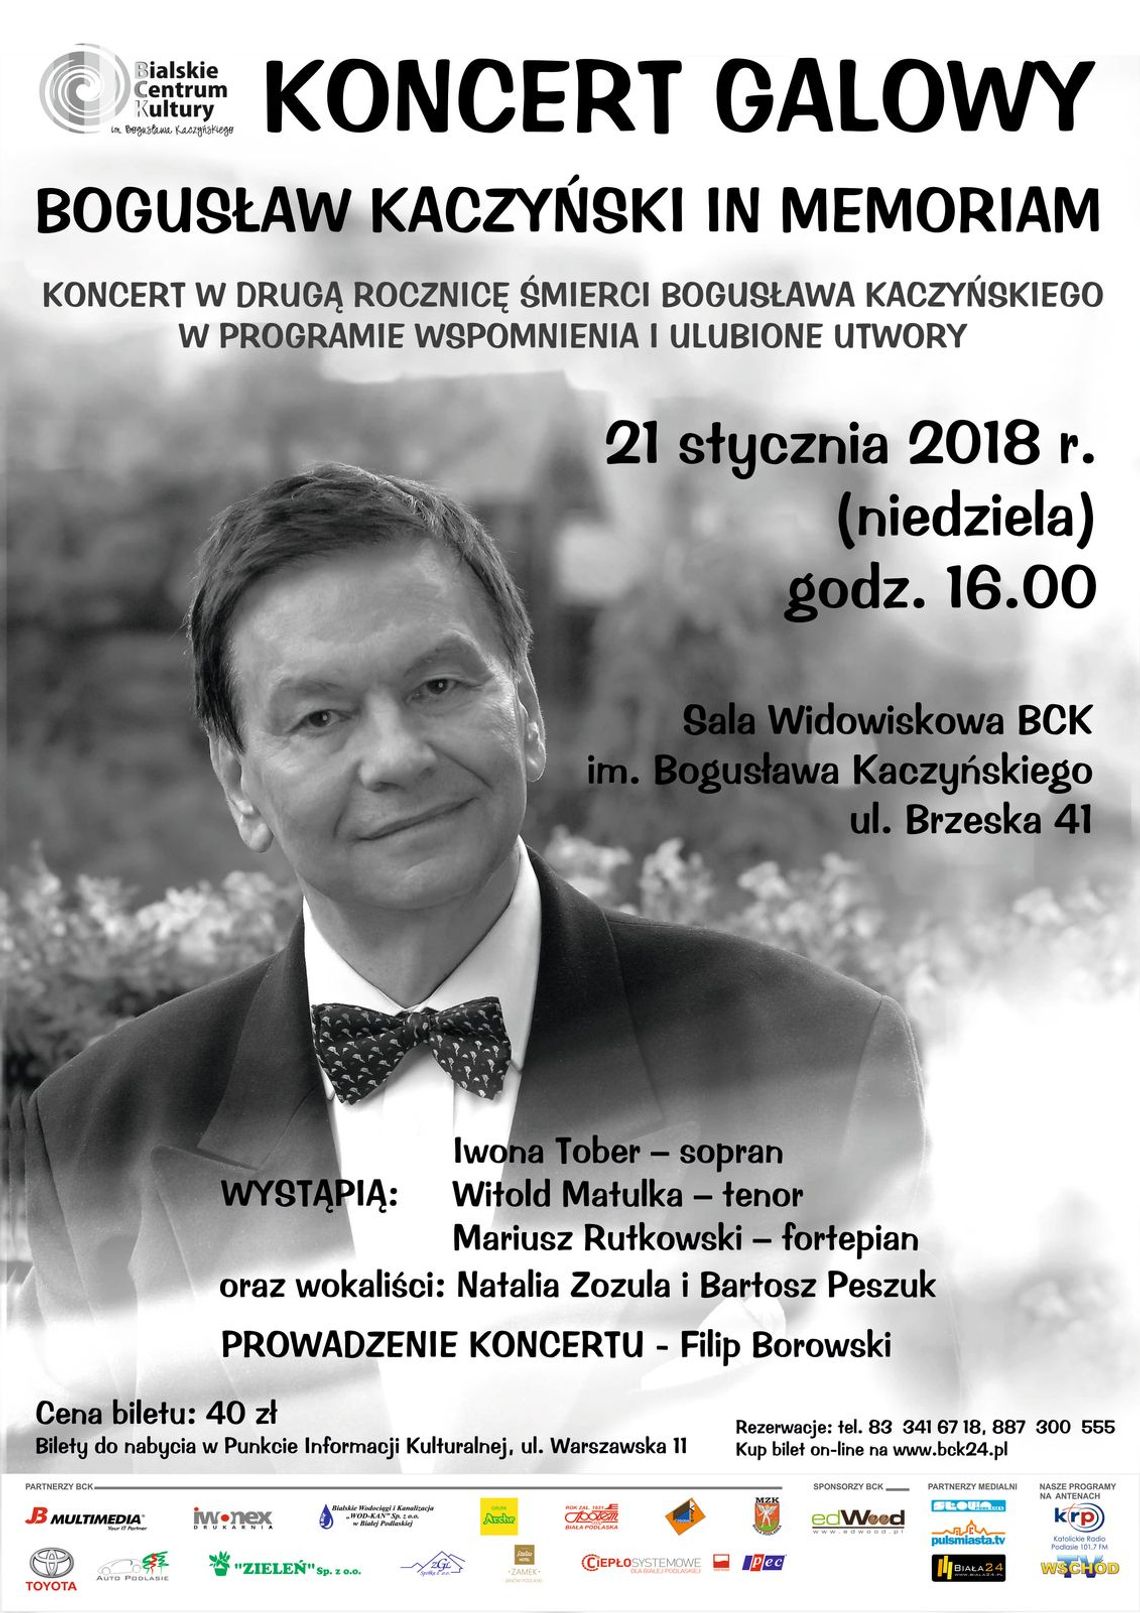 "Bogusław Kaczyński in memoriam"